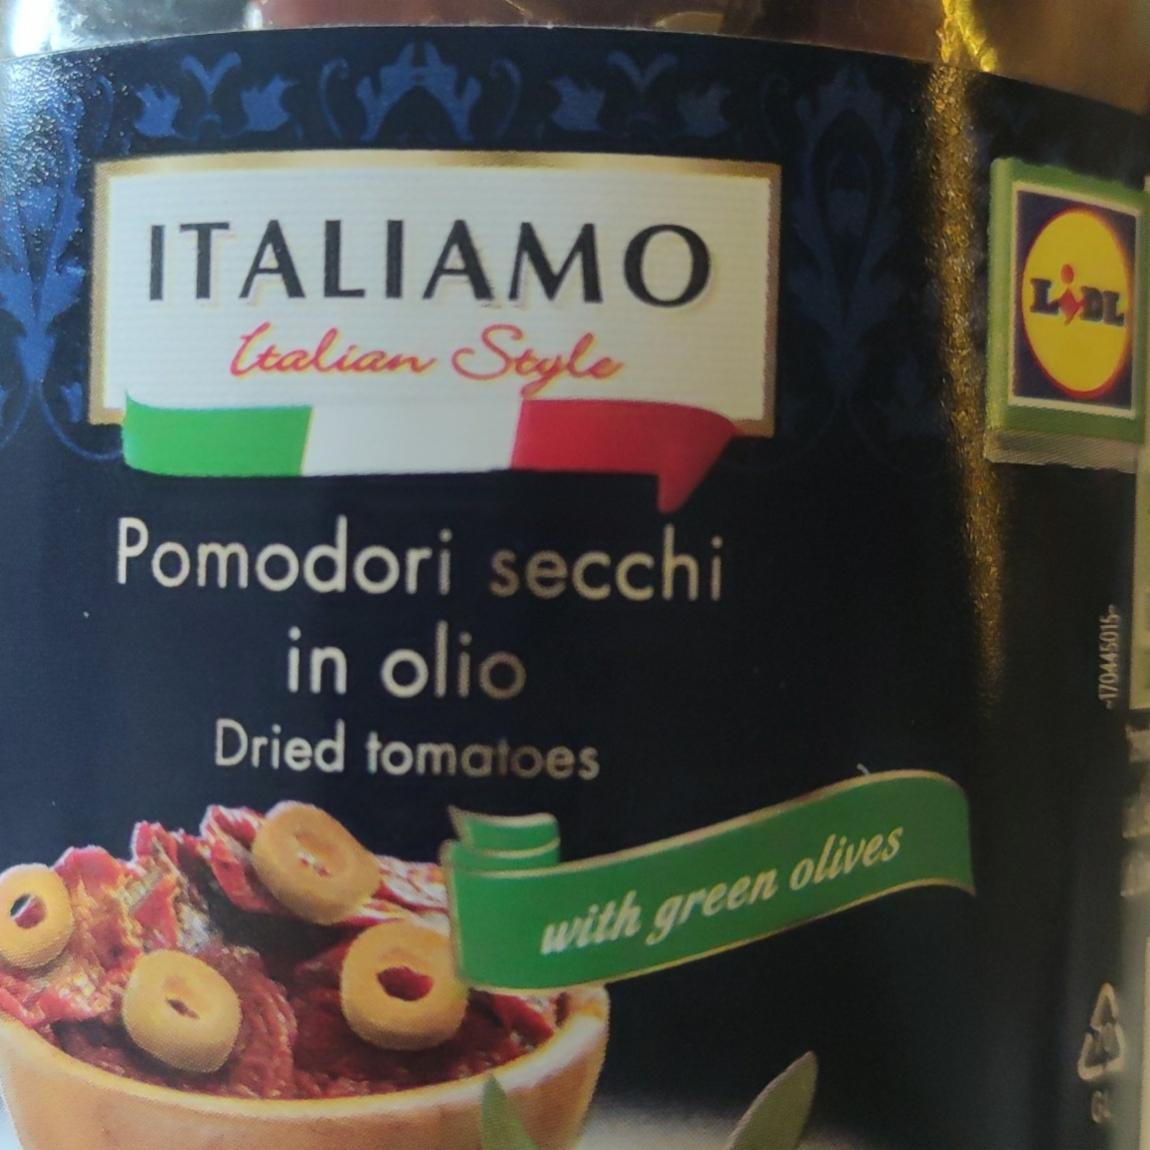 Fotografie - Pomodori secchi in olio Dried tomatoes with green olives Italiamo